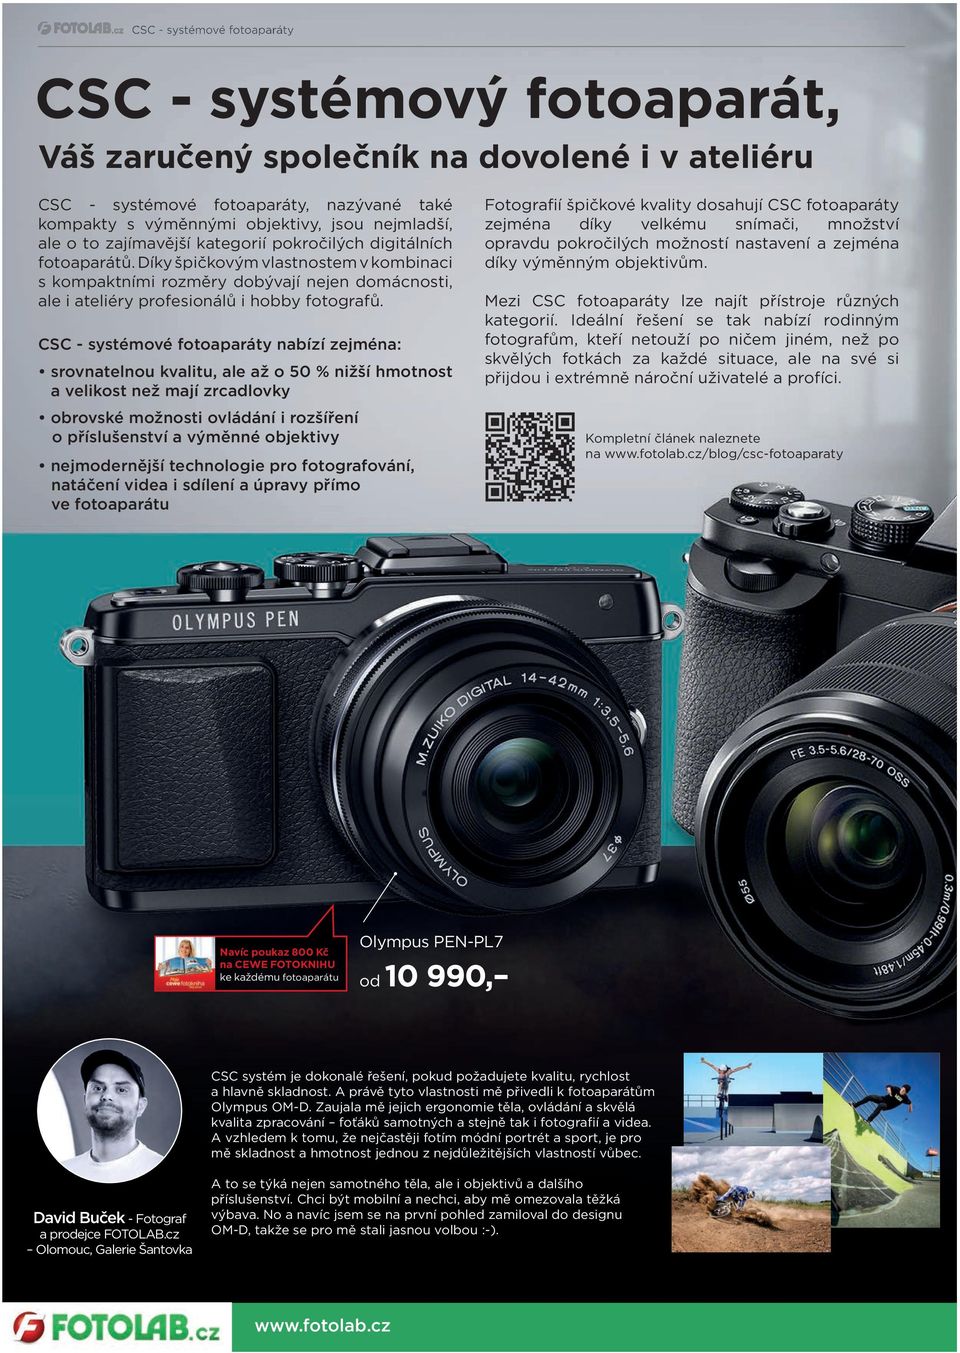 CSC - systémové fotoaparáty nabízí zejména: srovnatelnou kvalitu, ale až o 50 % nižší hmotnost a velikost než mají zrcadlovky obrovské možnosti ovládání i rozšíření o příslušenství a výměnné